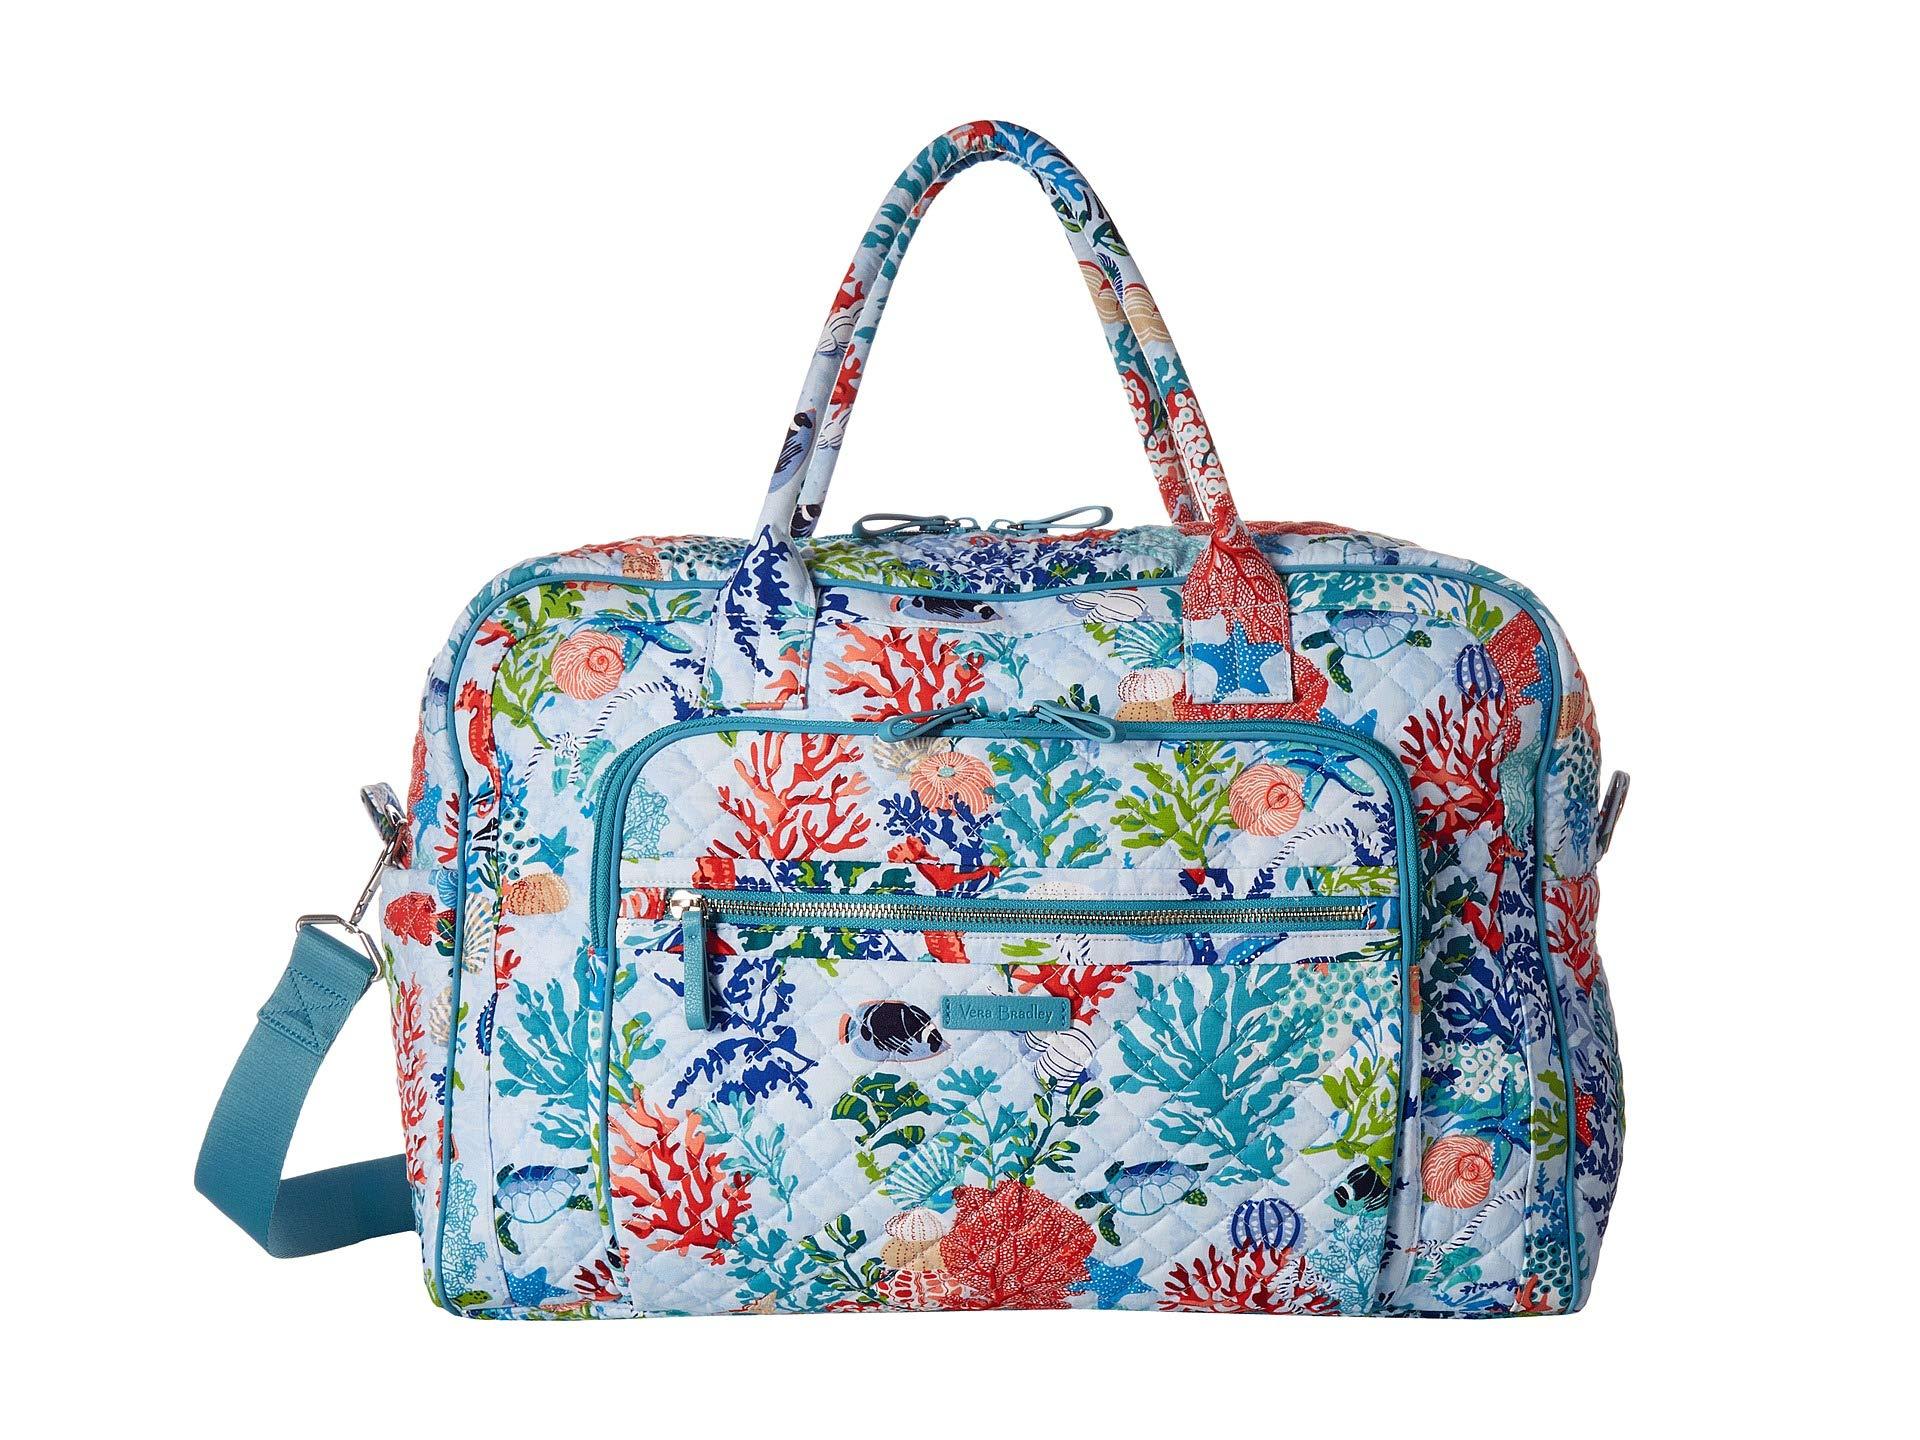 Lyst - Vera Bradley Iconic Weekender Travel Bag (shore Thing) Weekender ...